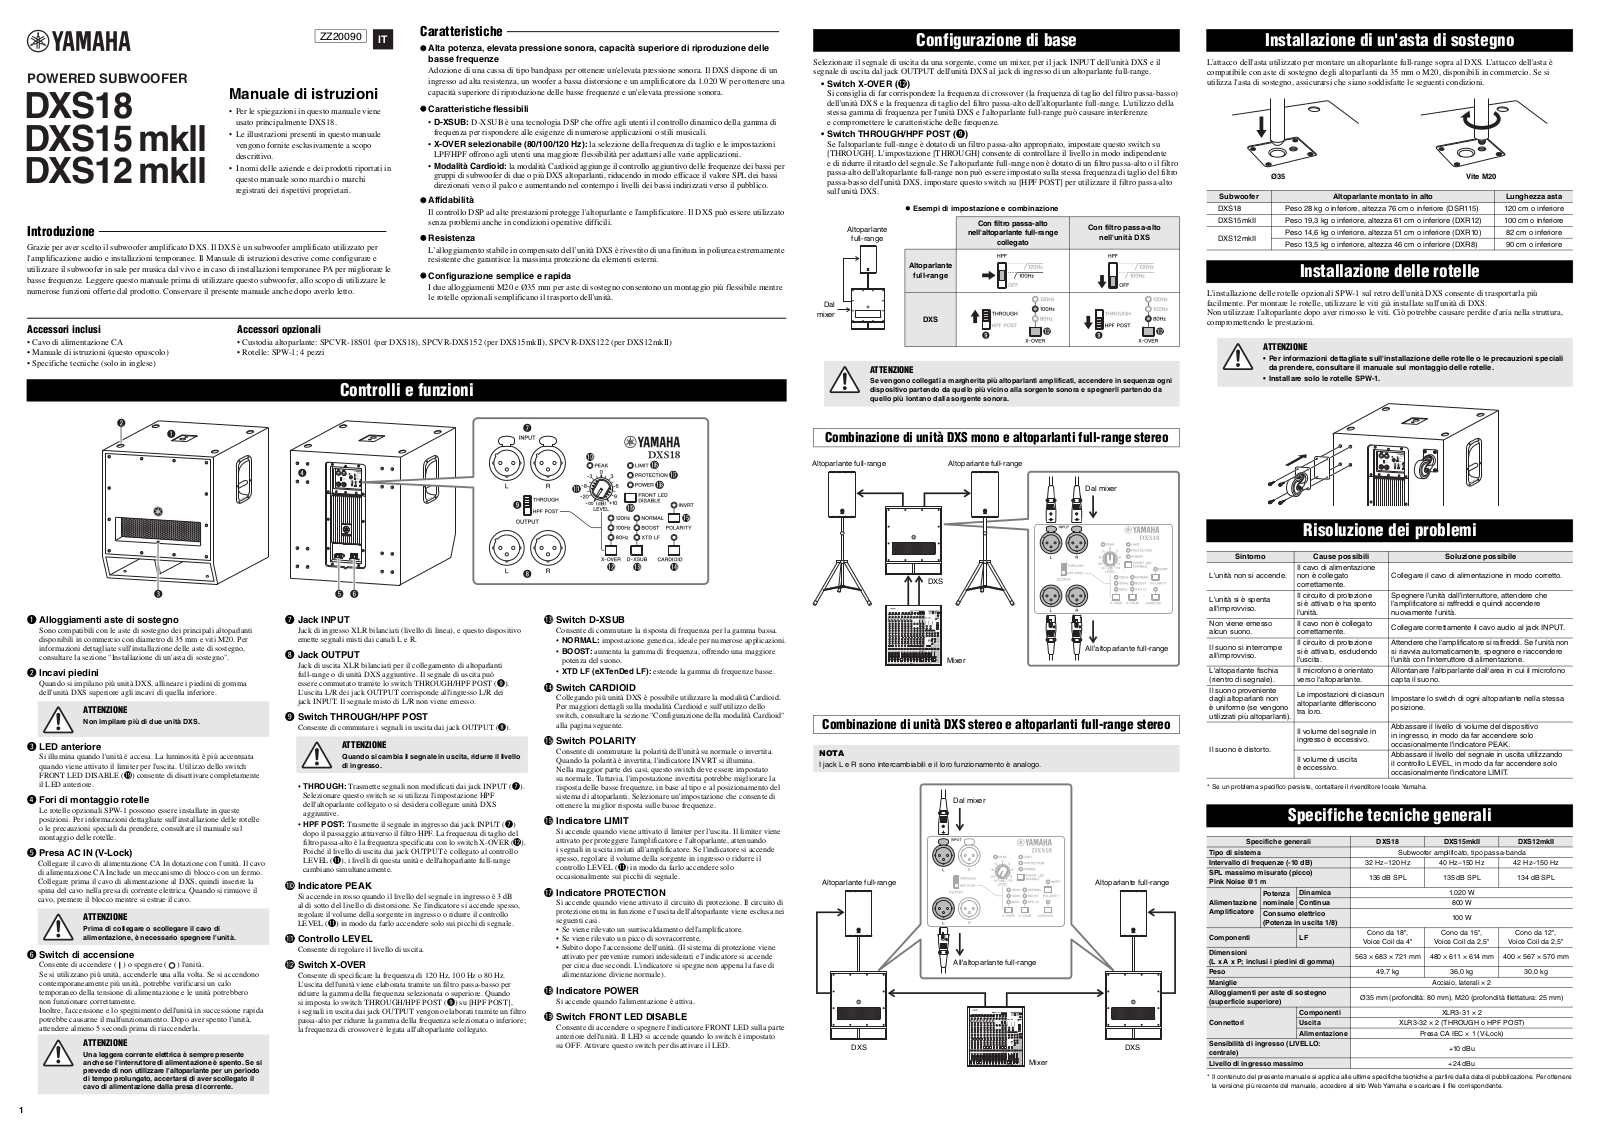 Yamaha DXS18, DXS15 MKII, DXS15 mkll, DXS12 mkll Owner’s Manual